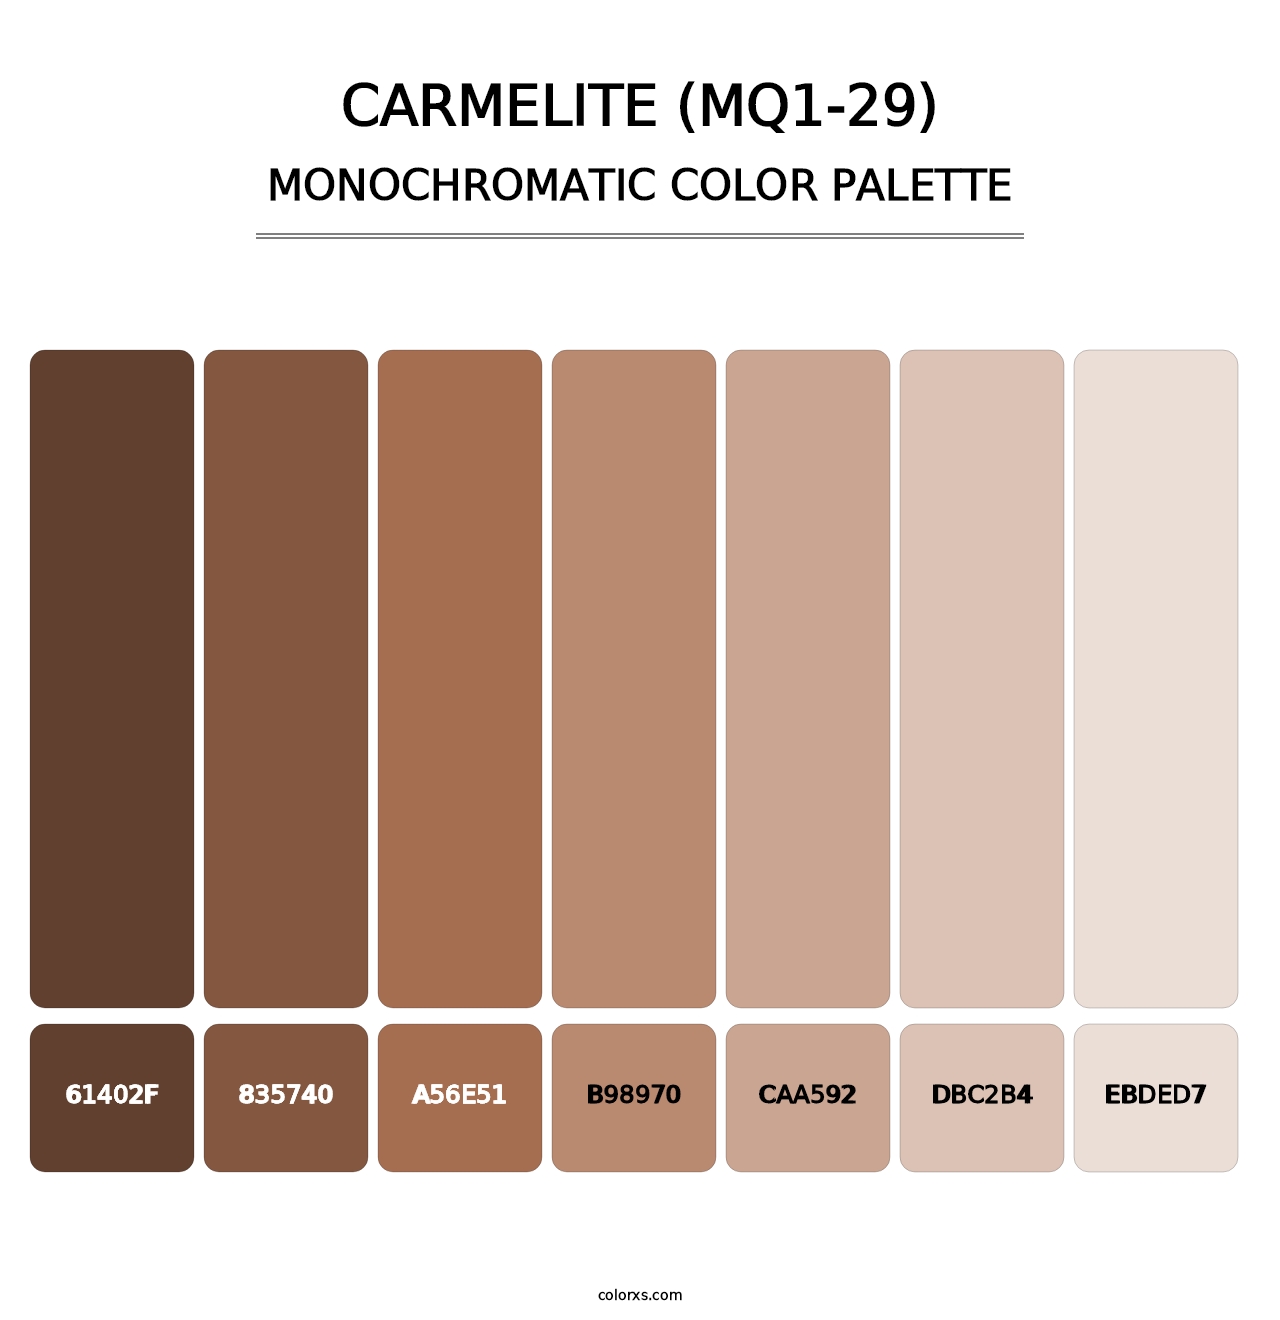 Carmelite (MQ1-29) - Monochromatic Color Palette